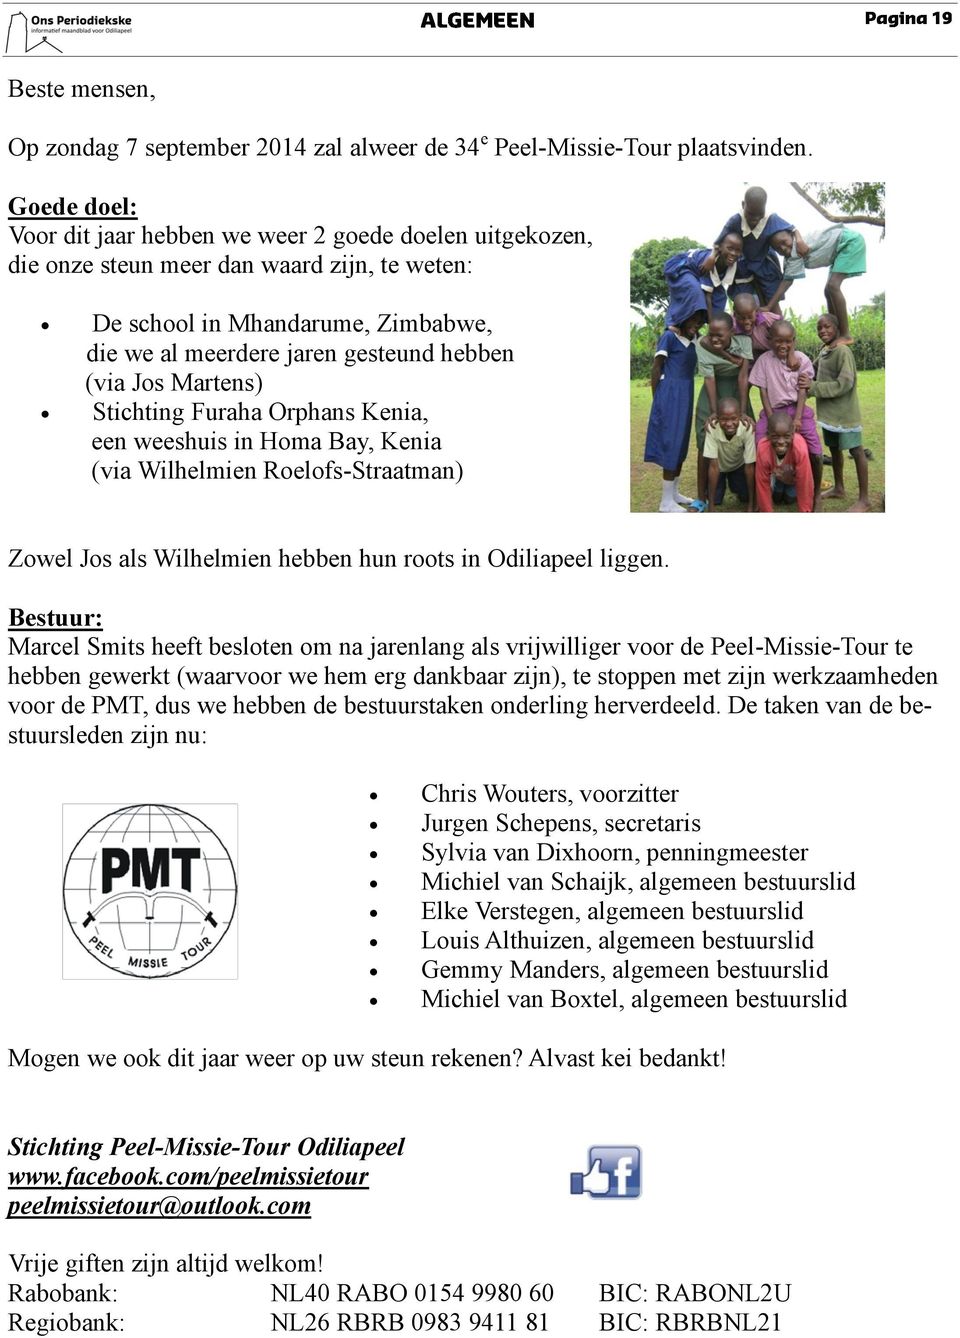 Martens) Stichting Furaha Orphans Kenia, een weeshuis in Homa Bay, Kenia (via Wilhelmien Roelofs-Straatman) Zowel Jos als Wilhelmien hebben hun roots in Odiliapeel liggen.